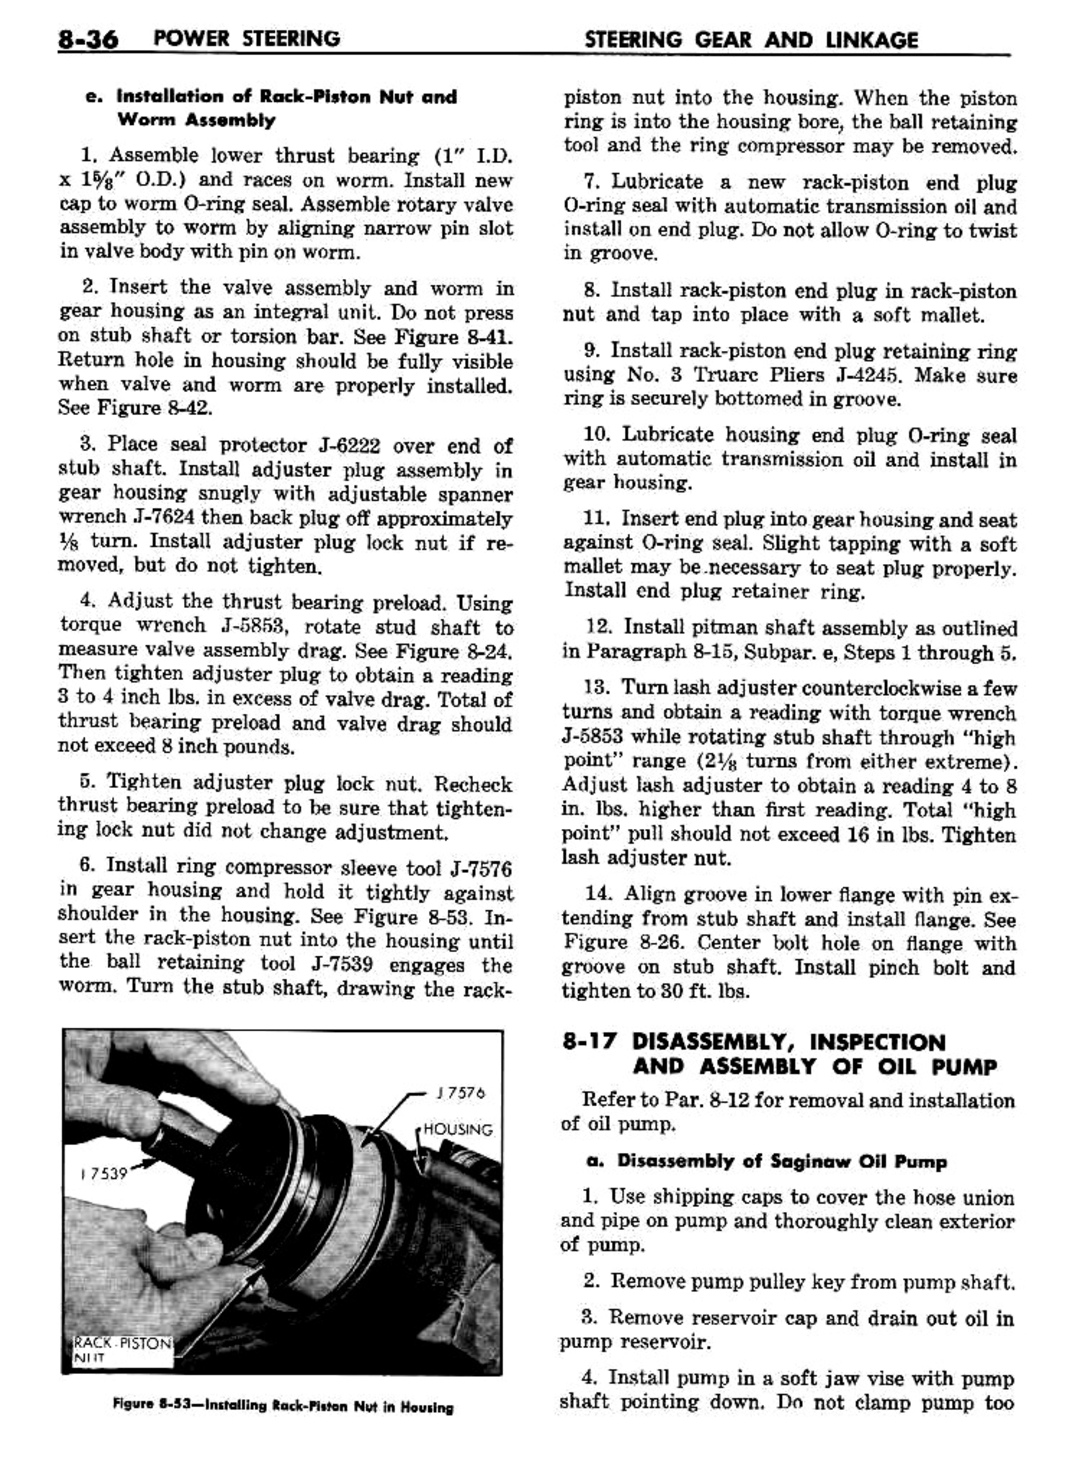 n_09 1960 Buick Shop Manual - Steering-036-036.jpg